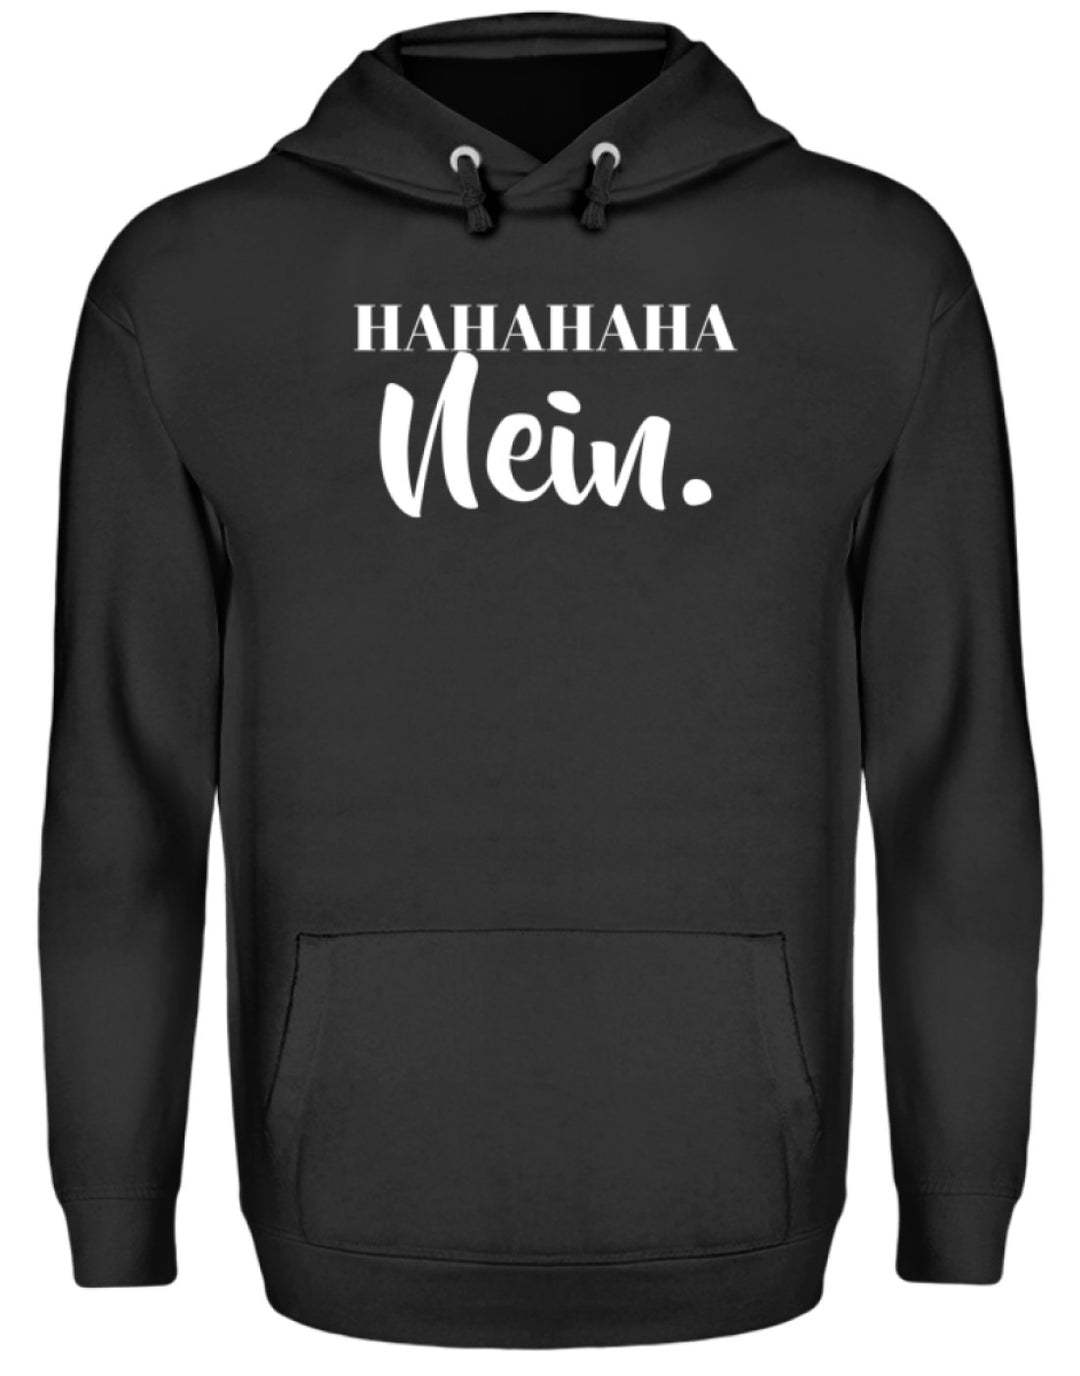 HaHaHaHa Nein  - Unisex Kapuzenpullover Hoodie - Words on Shirts